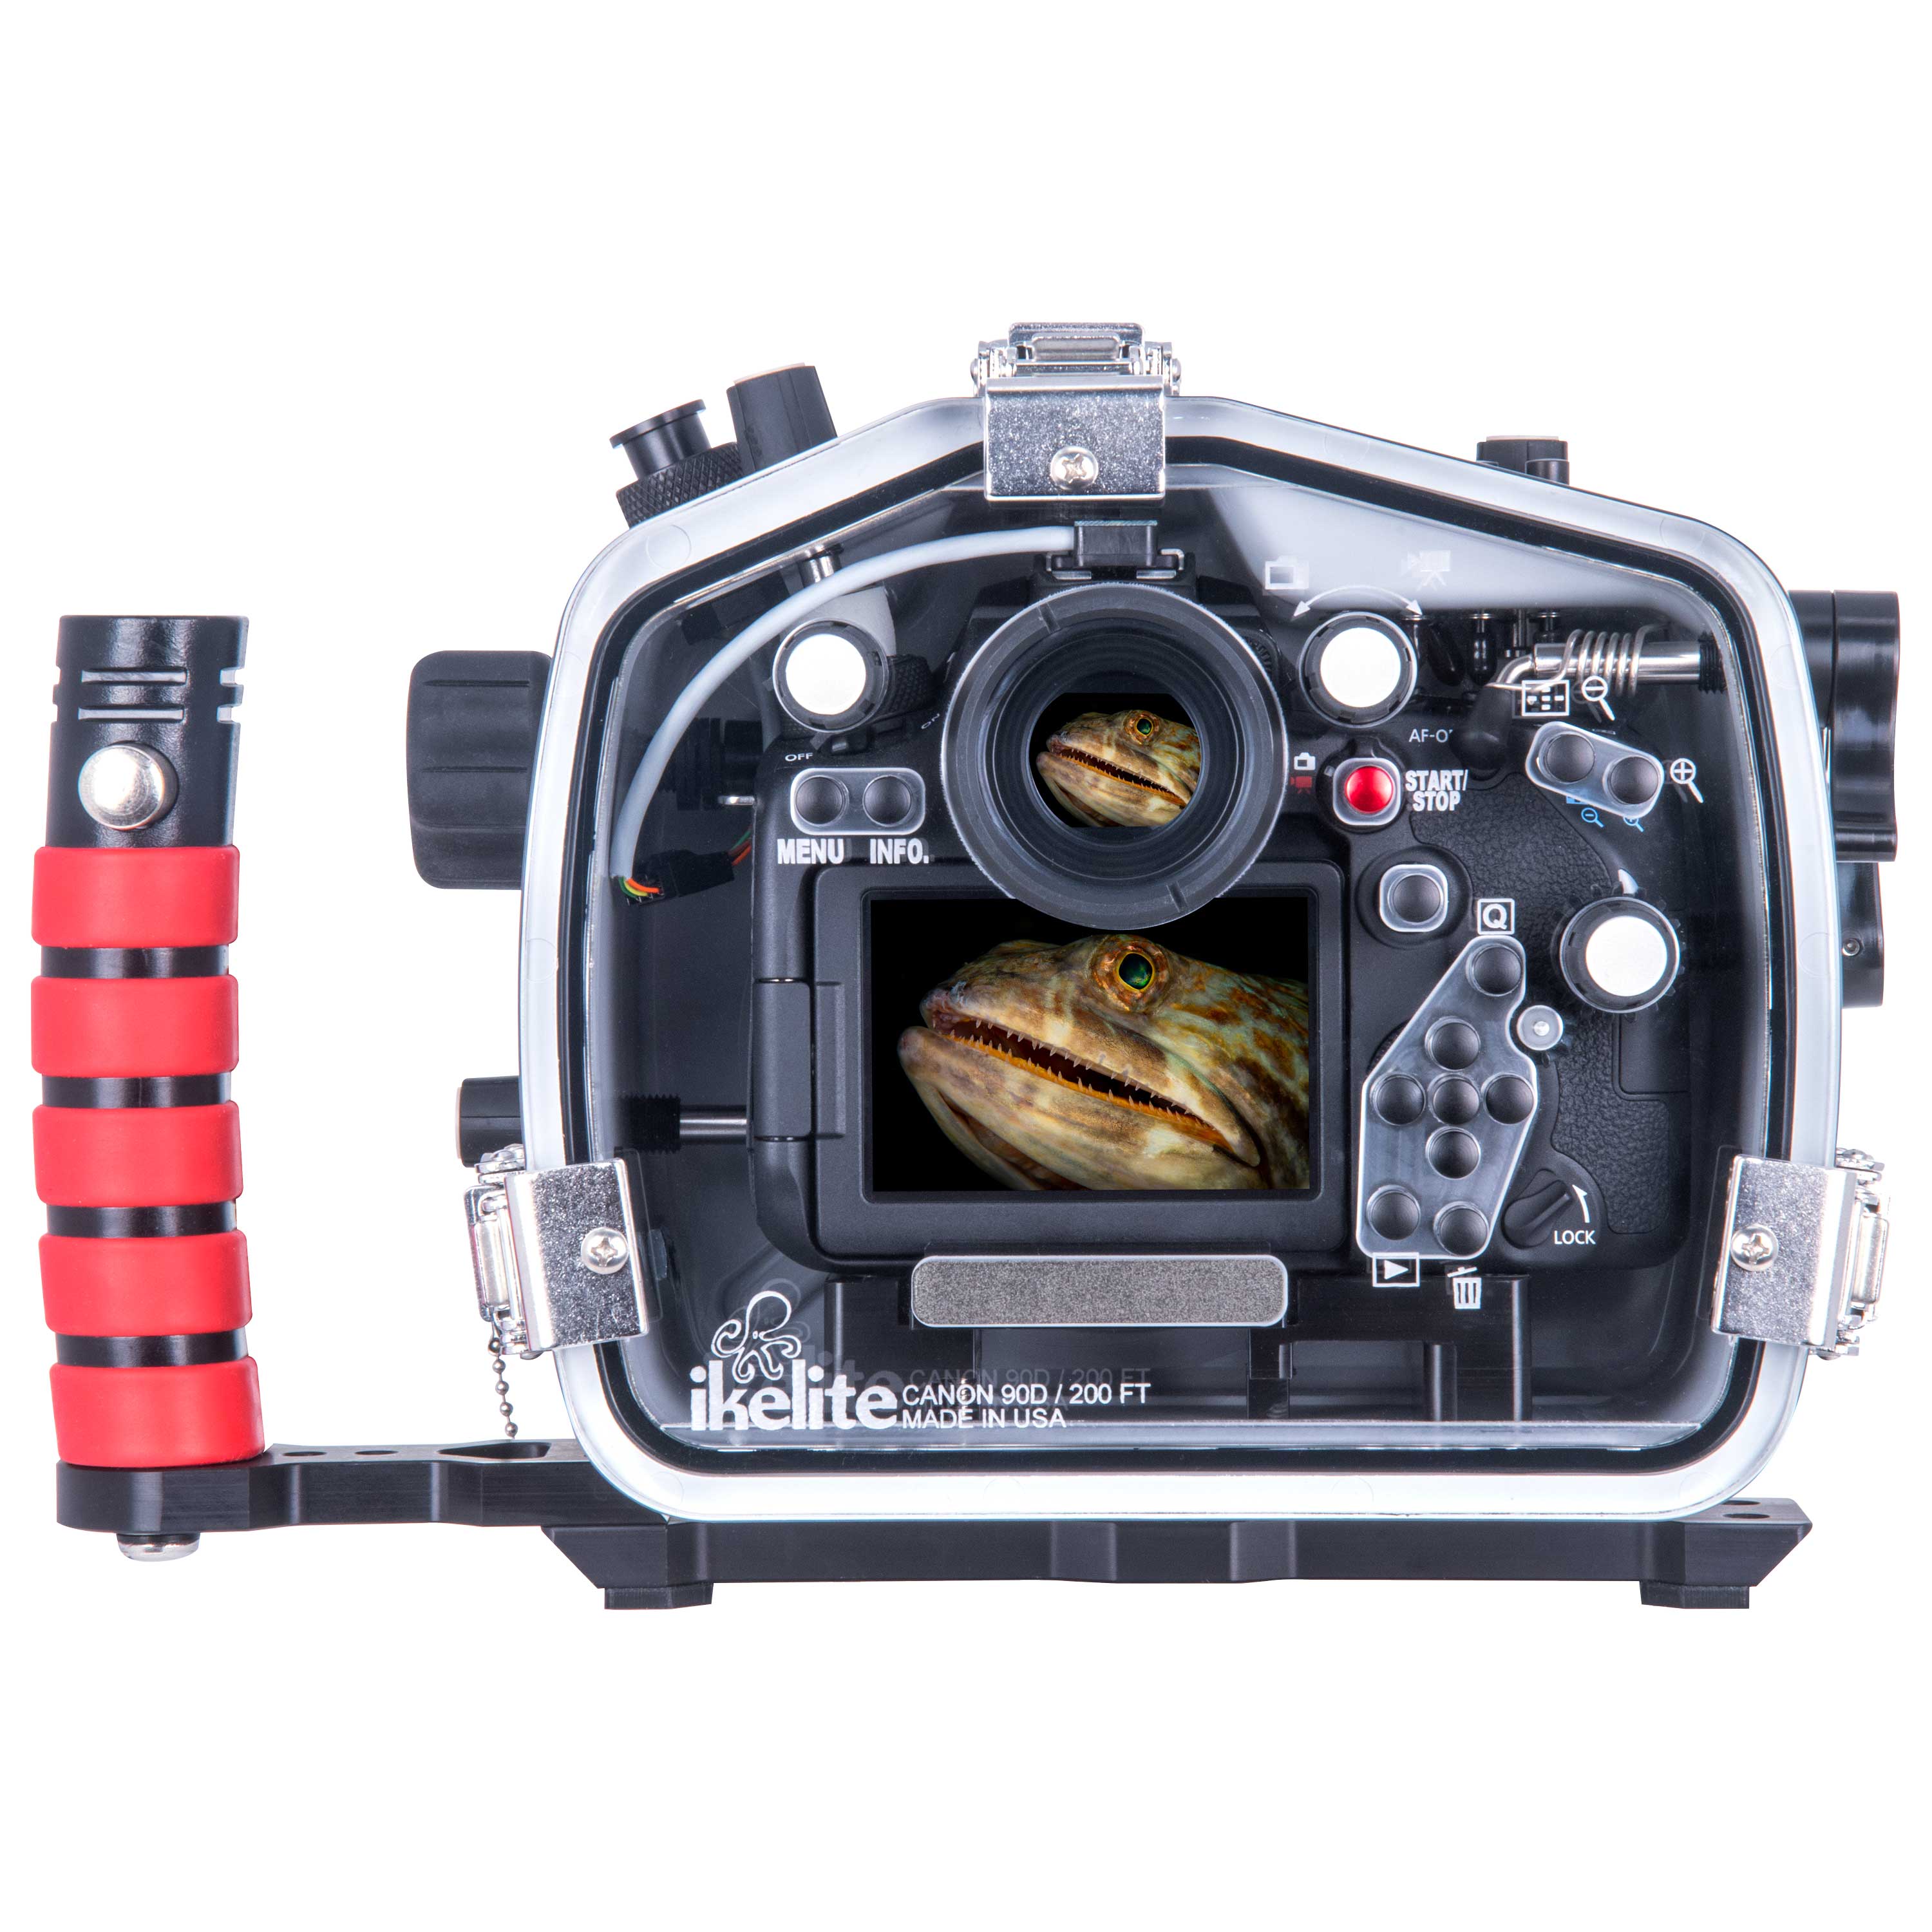 jam koolstof tijger 200DL Underwater Housing for Canon EOS 90D DSLR Cameras